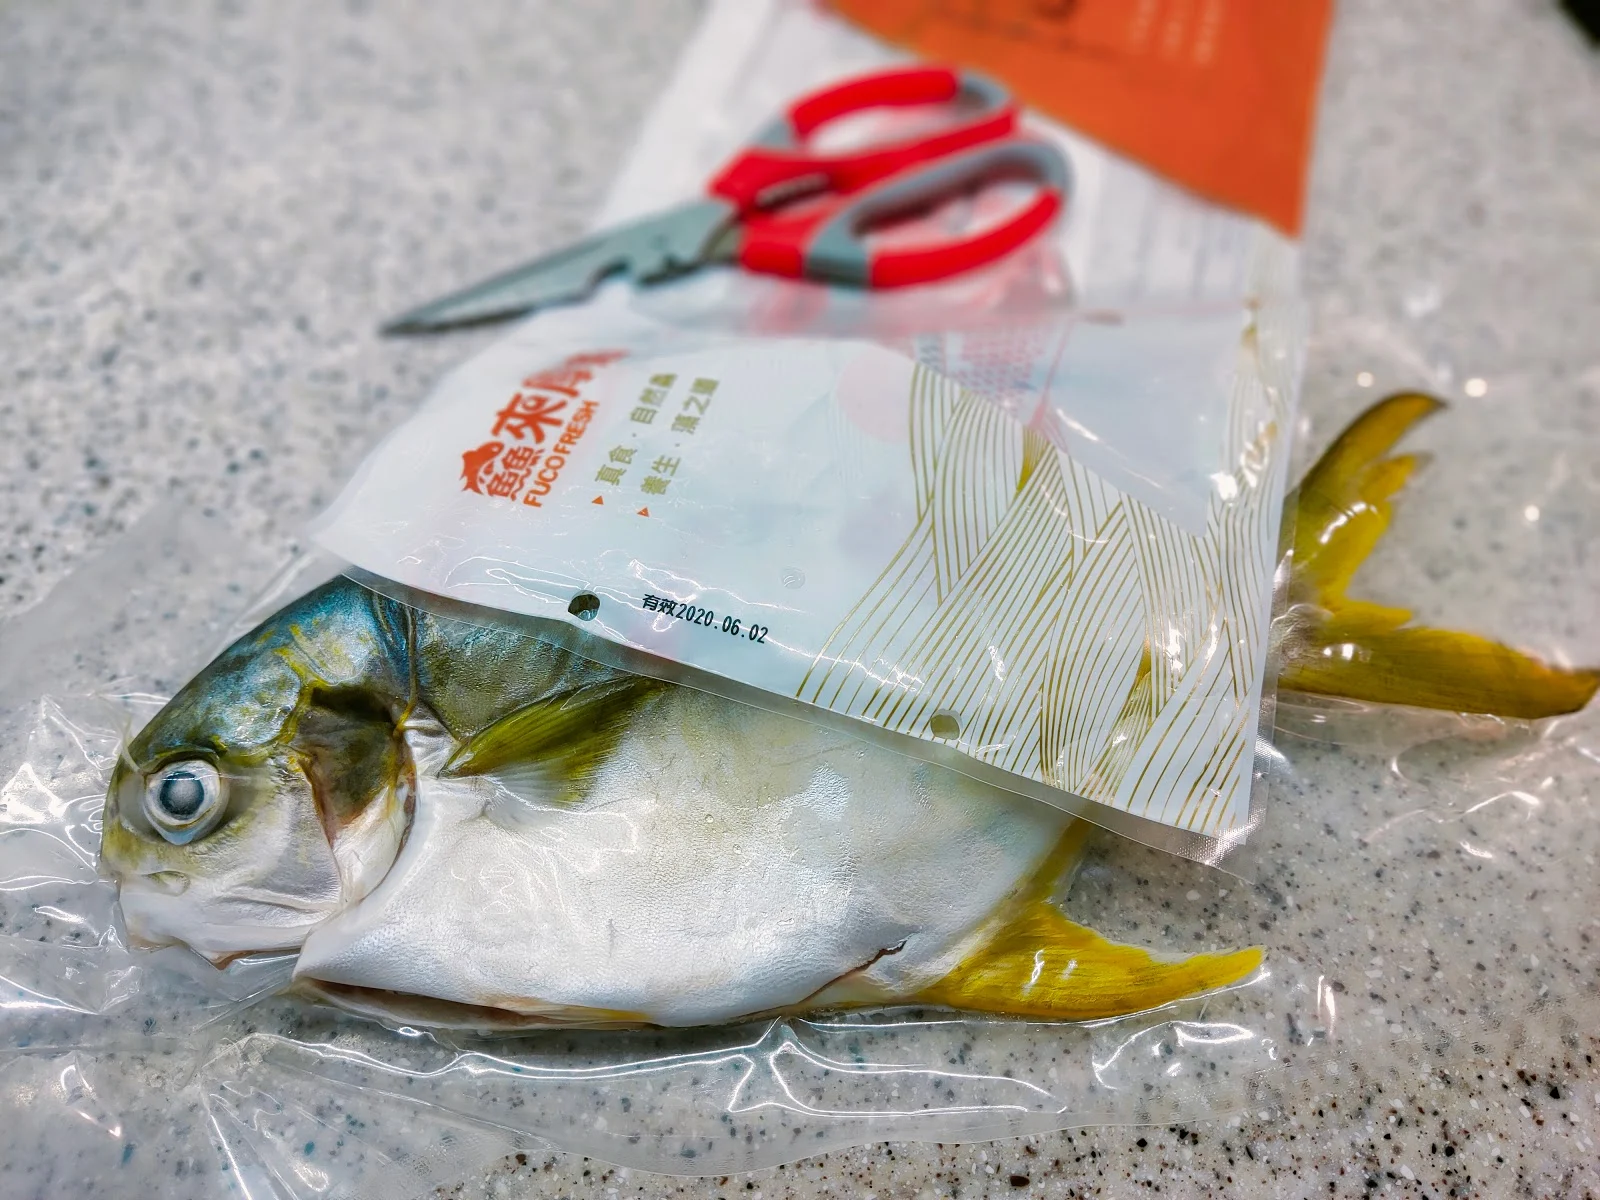 Hi-Q官方商城褐藻醣膠健康魚採用友善環境海水養殖使用歐盟檢驗標準與屏東直送產銷履歷